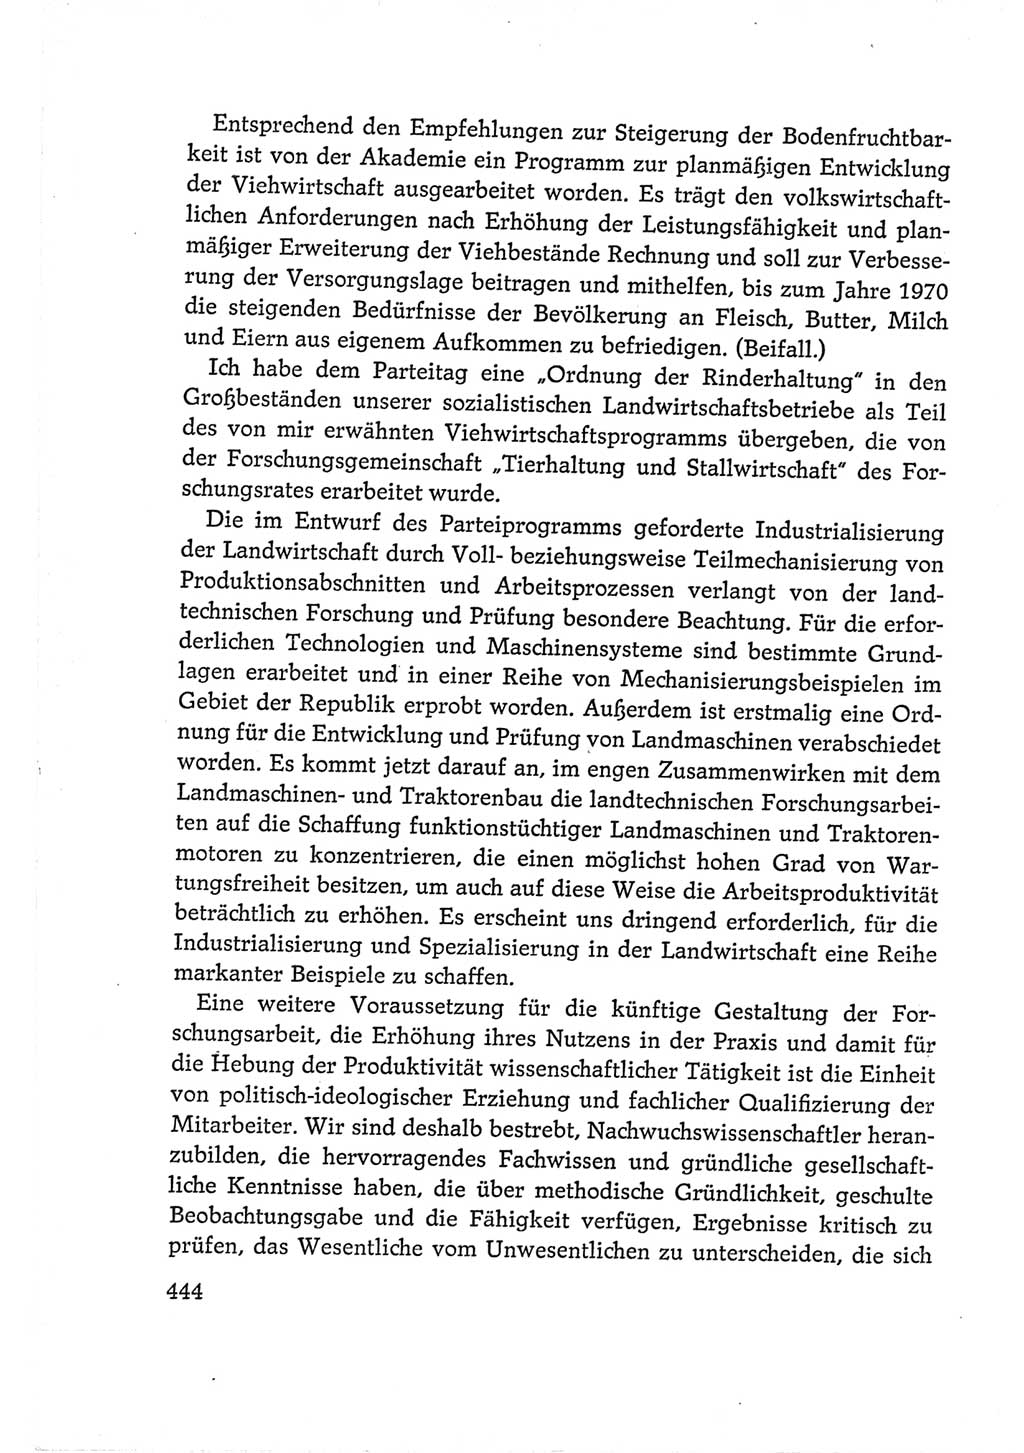 Protokoll der Verhandlungen des Ⅵ. Parteitages der Sozialistischen Einheitspartei Deutschlands (SED) [Deutsche Demokratische Republik (DDR)] 1963, Band Ⅰ, Seite 444 (Prot. Verh. Ⅵ. PT SED DDR 1963, Bd. Ⅰ, S. 444)